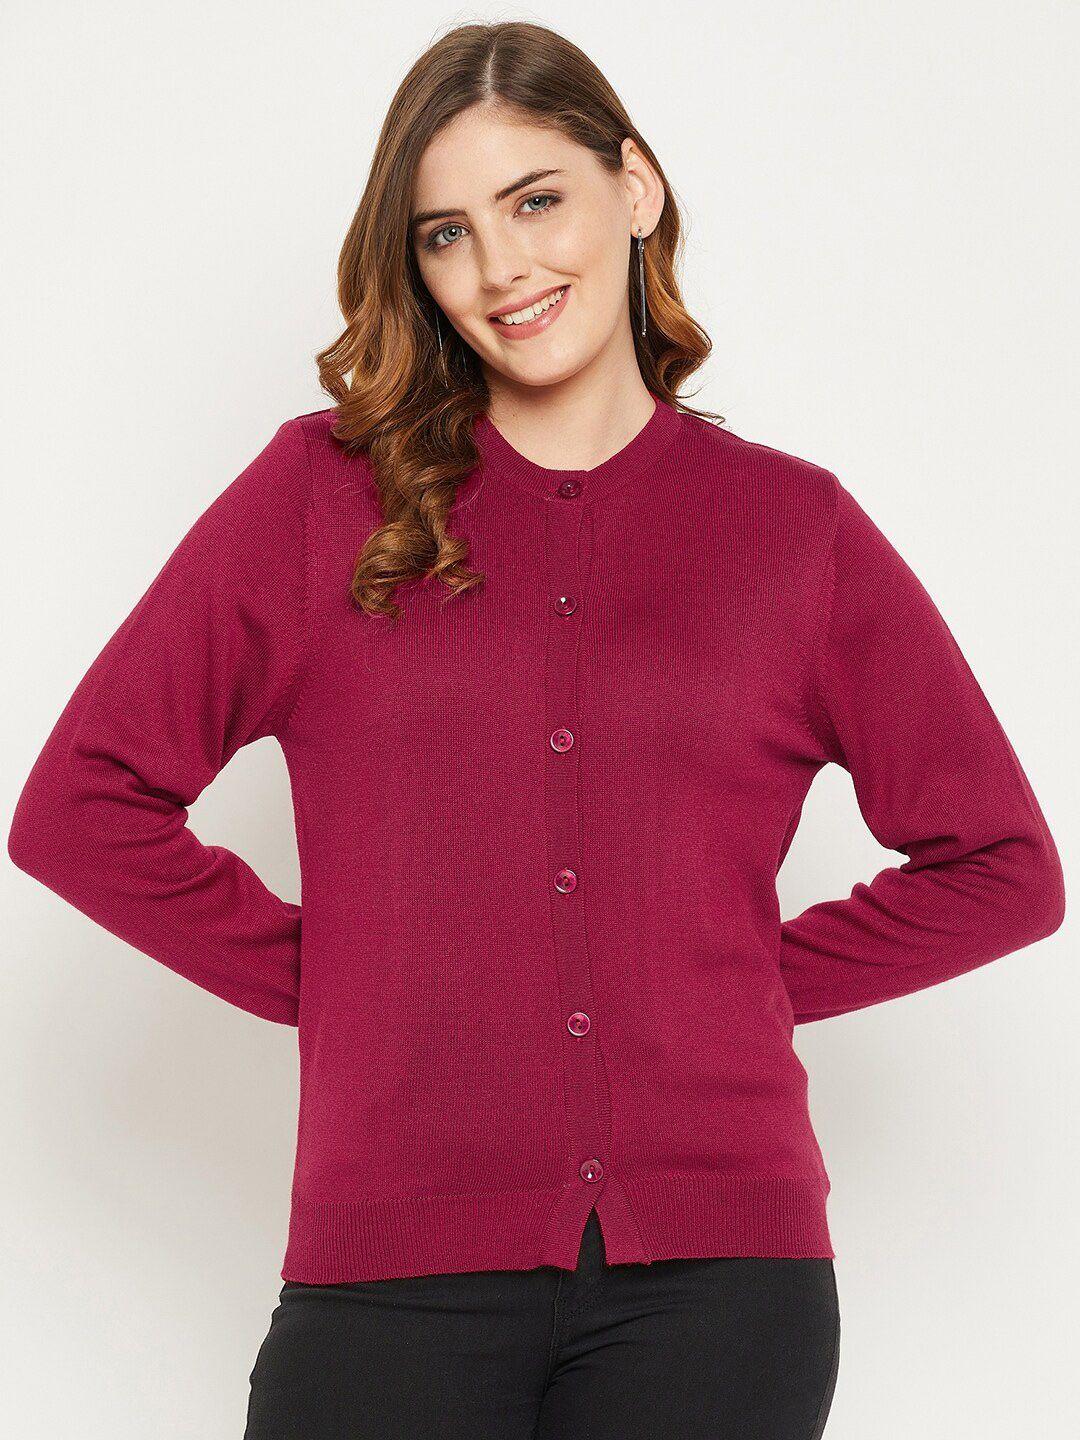 zigo women maroon wool cardigan sweater